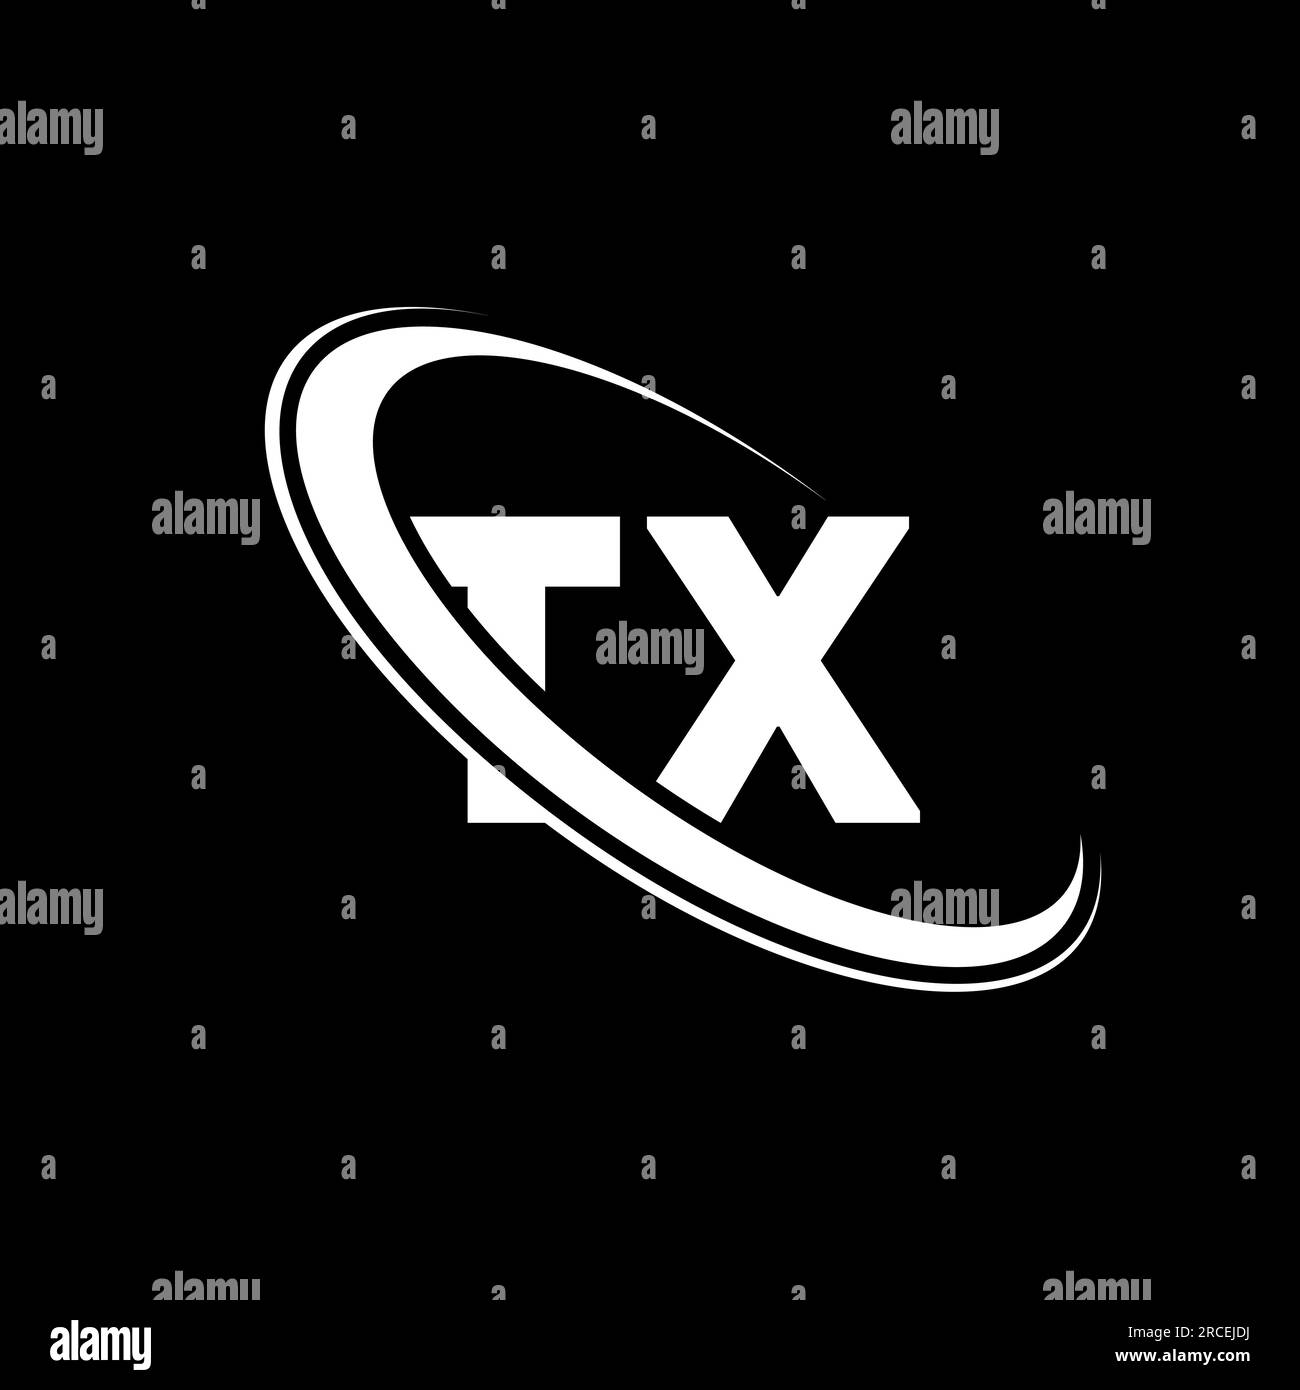 TX logo. T X design. White TX letter. TX/T X letter logo design. Initial letter TX linked circle uppercase monogram logo. Stock Vector